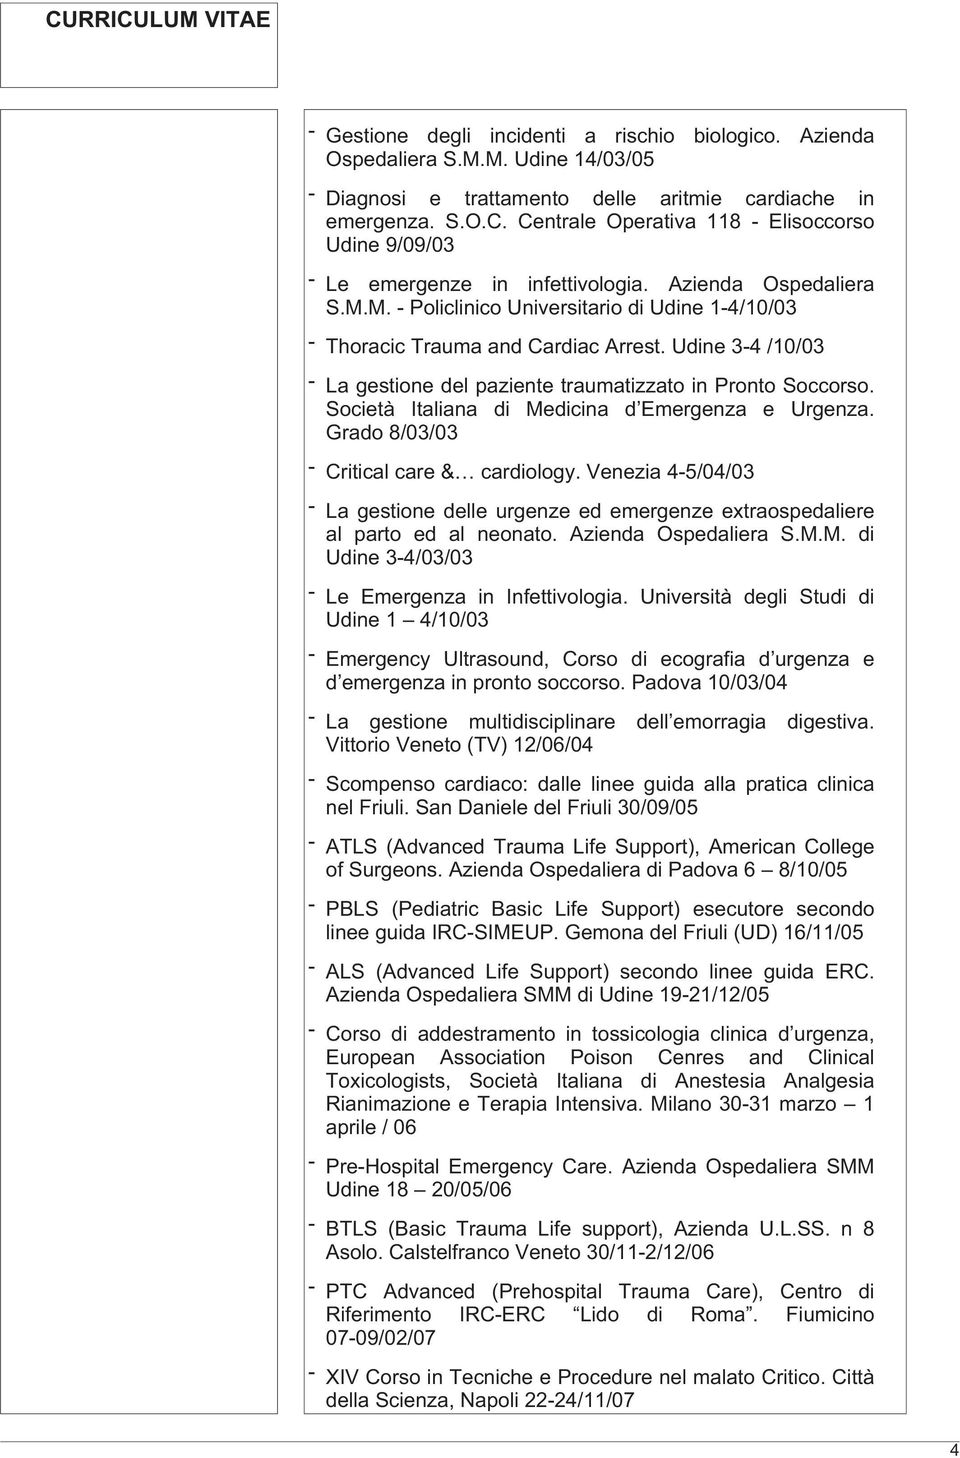 Udine3-4/10/03 - LagestionedelpazientetraumatizzatoinProntoSoccorso. Società Italiana di Medicina d Emergenza e Urgenza. Grado 8/03/03 - Criticalcare& cardiology.